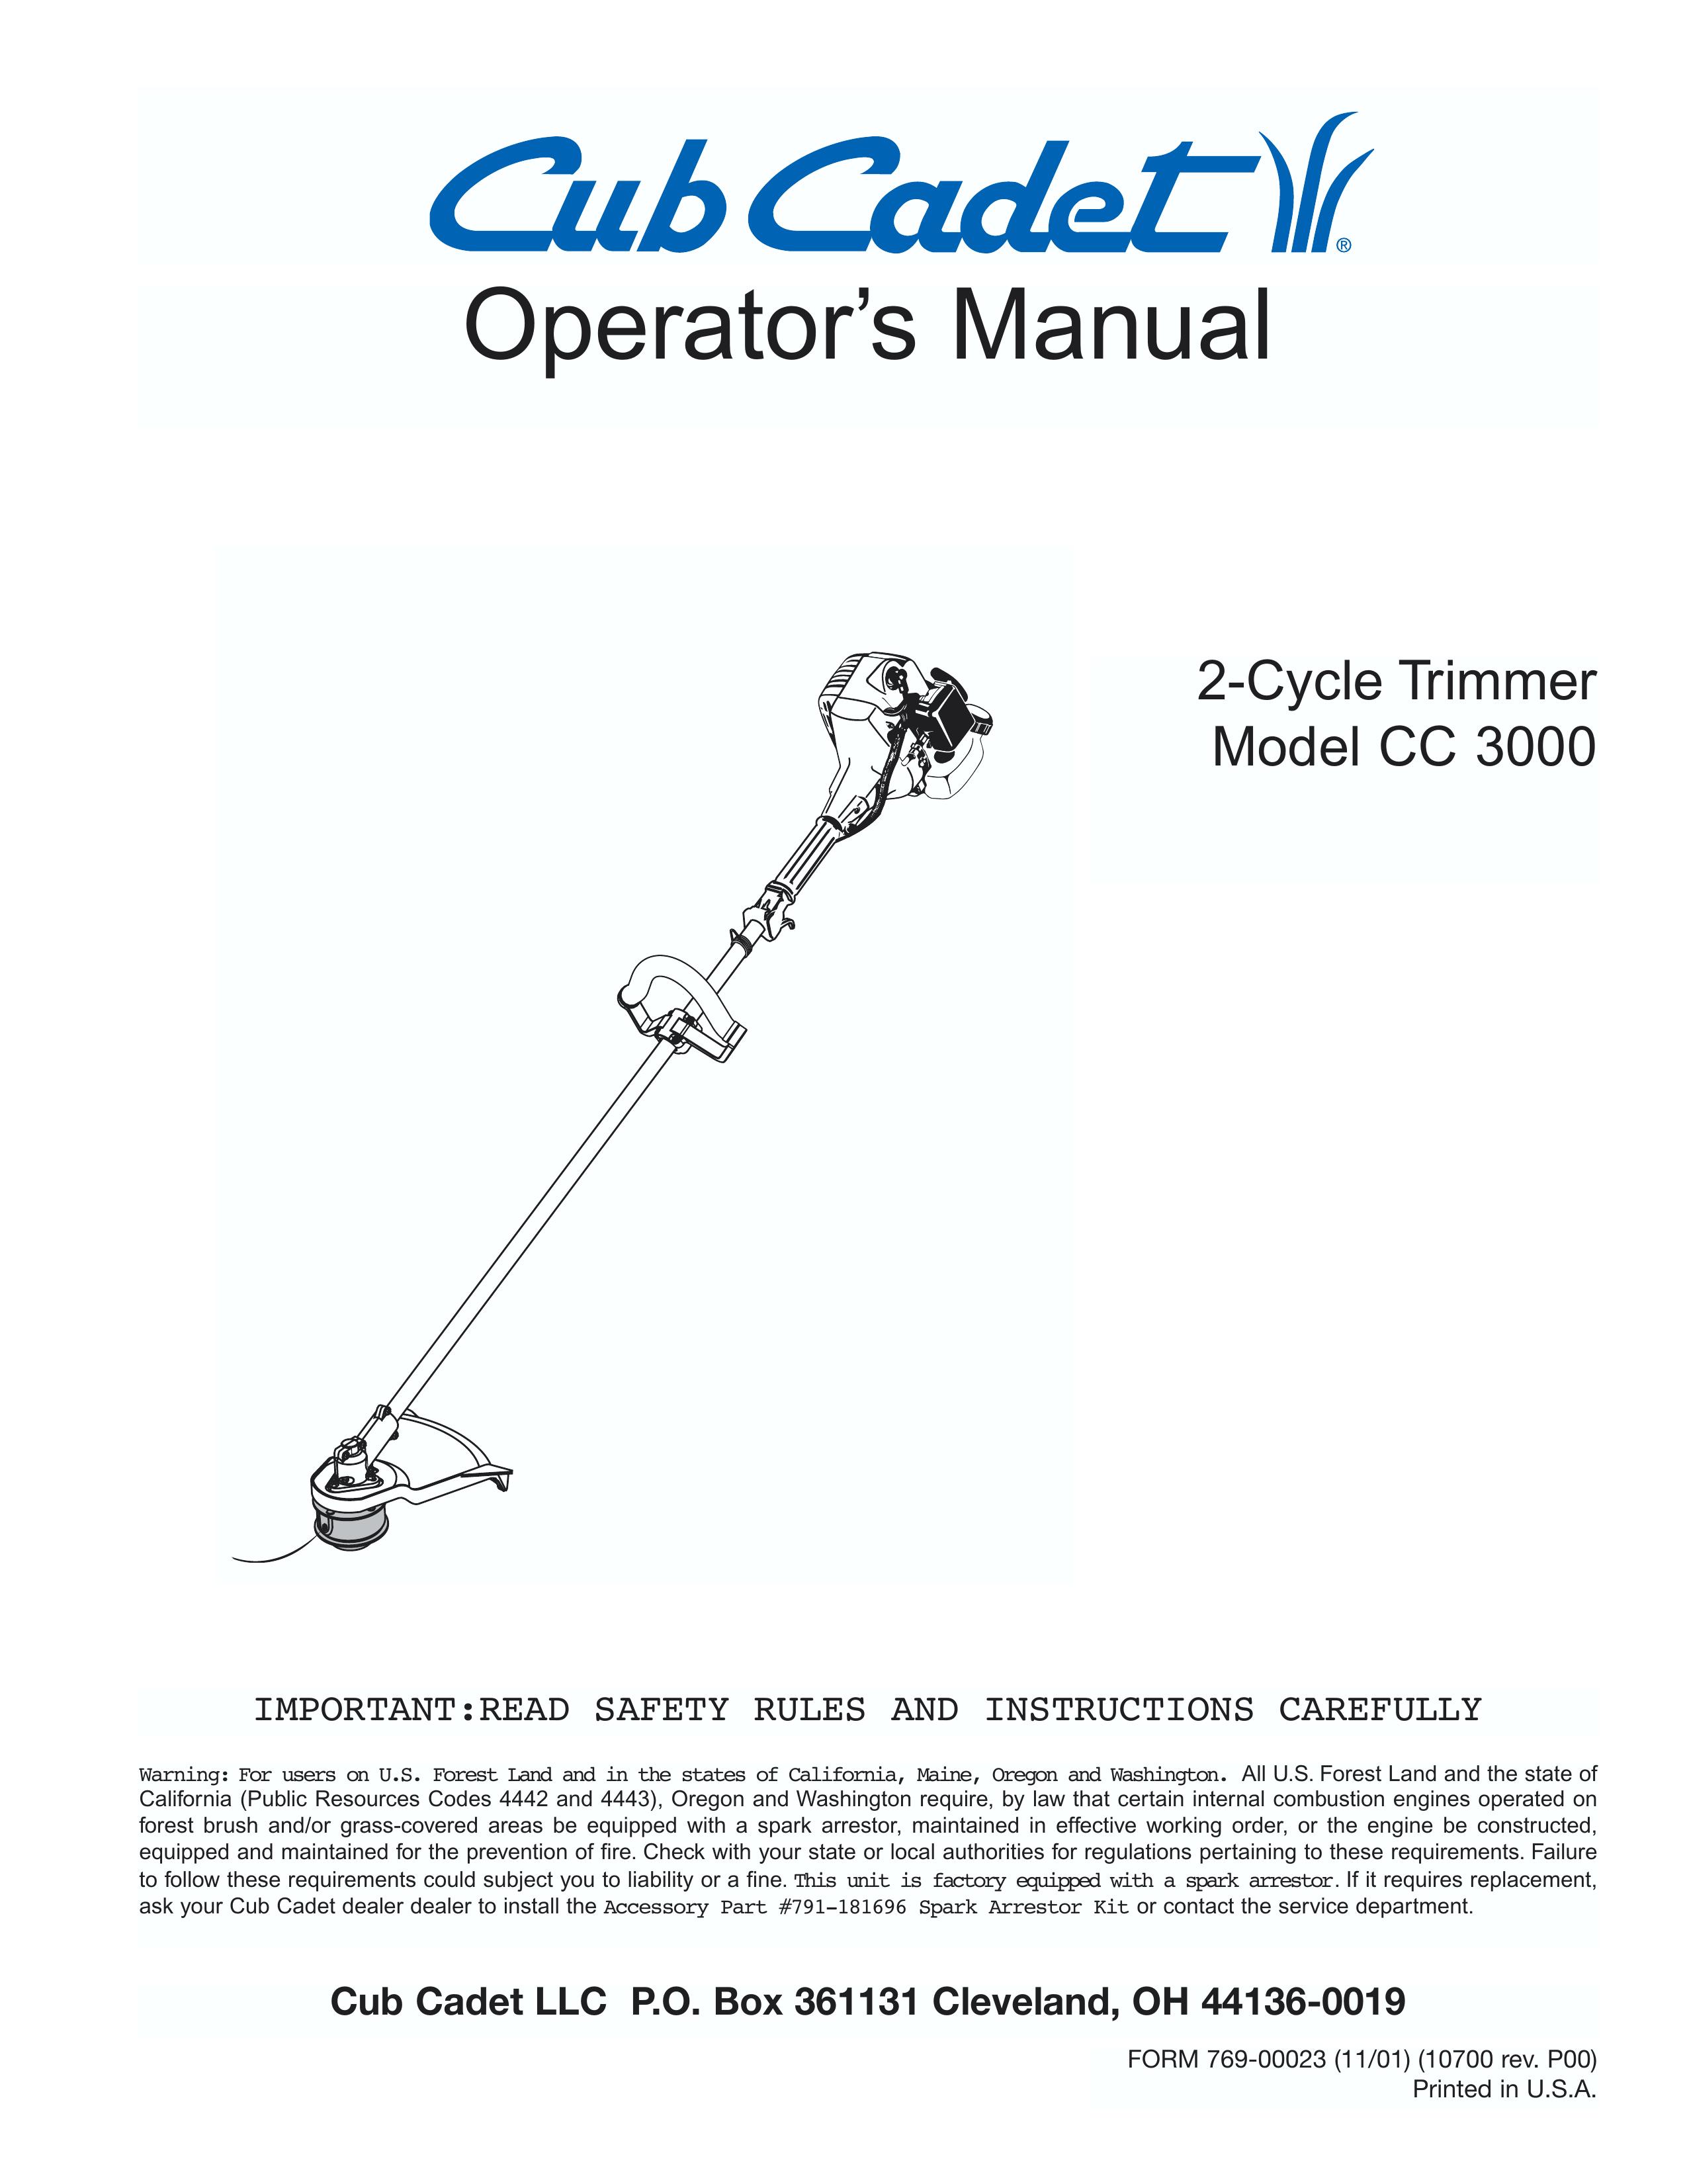 Cub Cadet CC3000 Trimmer User Manual